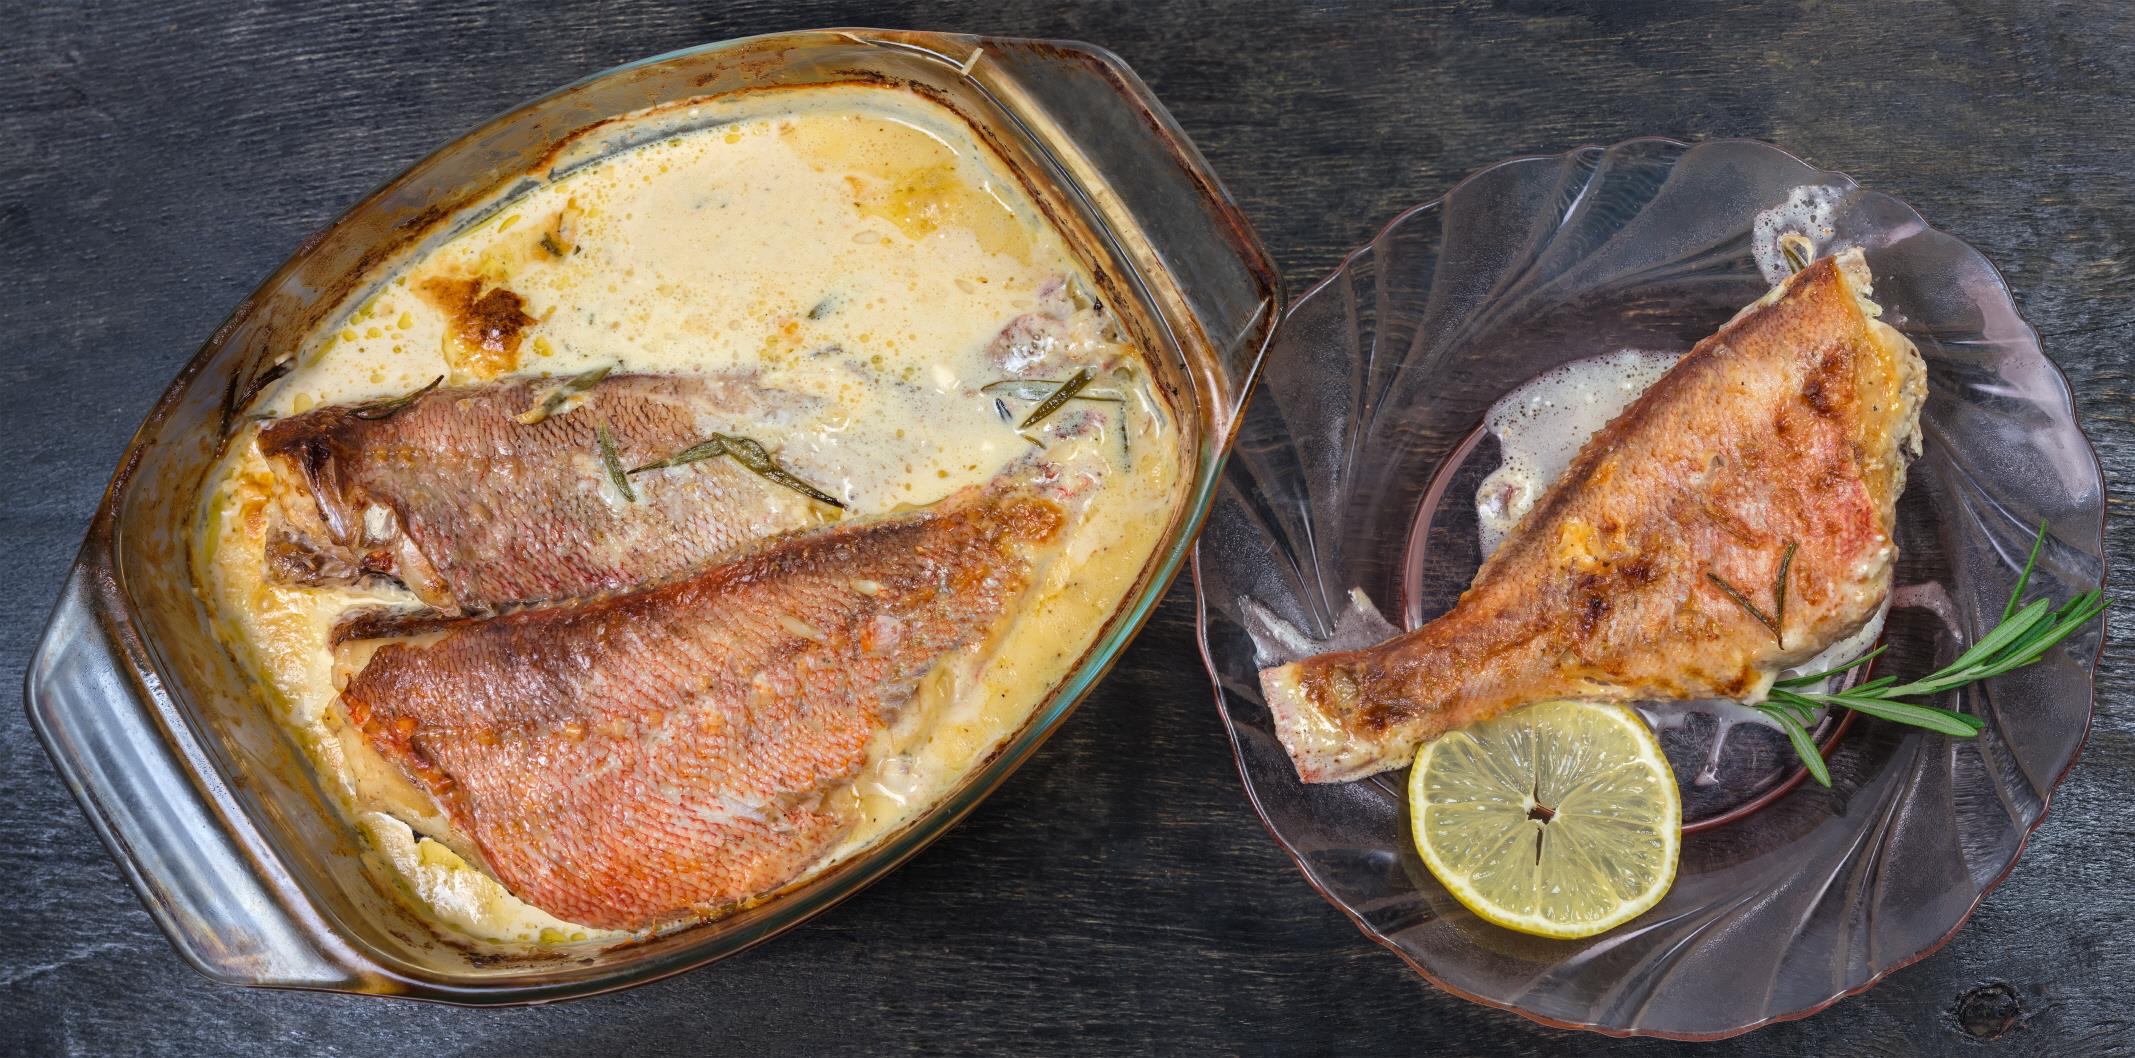 레드피쉬 요리  Redfish dish(Ocean perch)